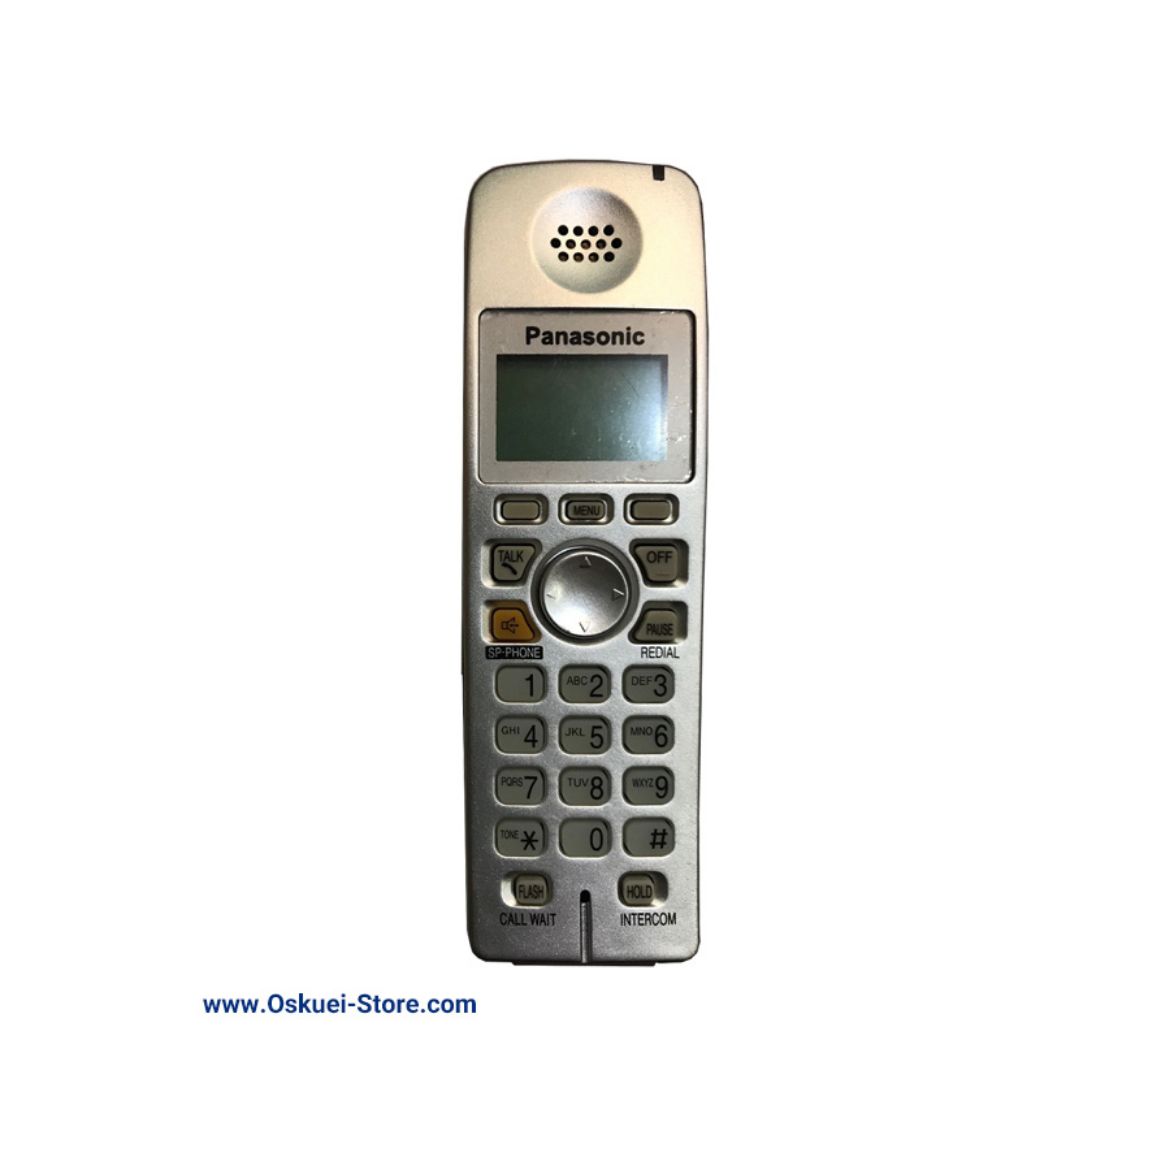 Panasonic KX-TGA600 Cordless Telephone Black